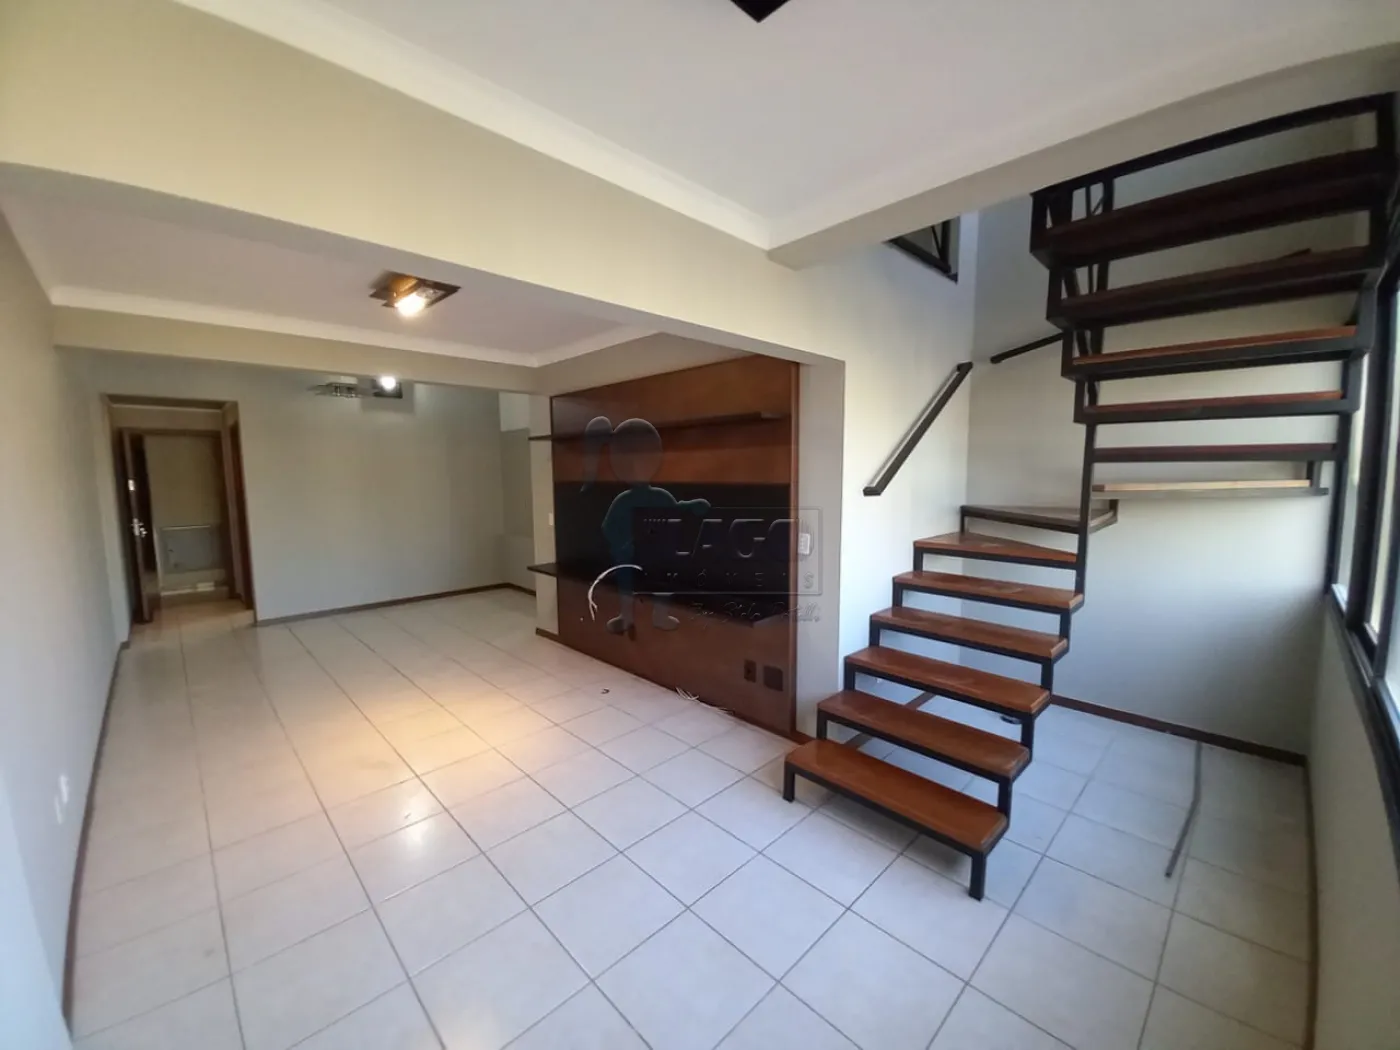 Alugar Apartamento / Duplex em Ribeirão Preto R$ 3.500,00 - Foto 4